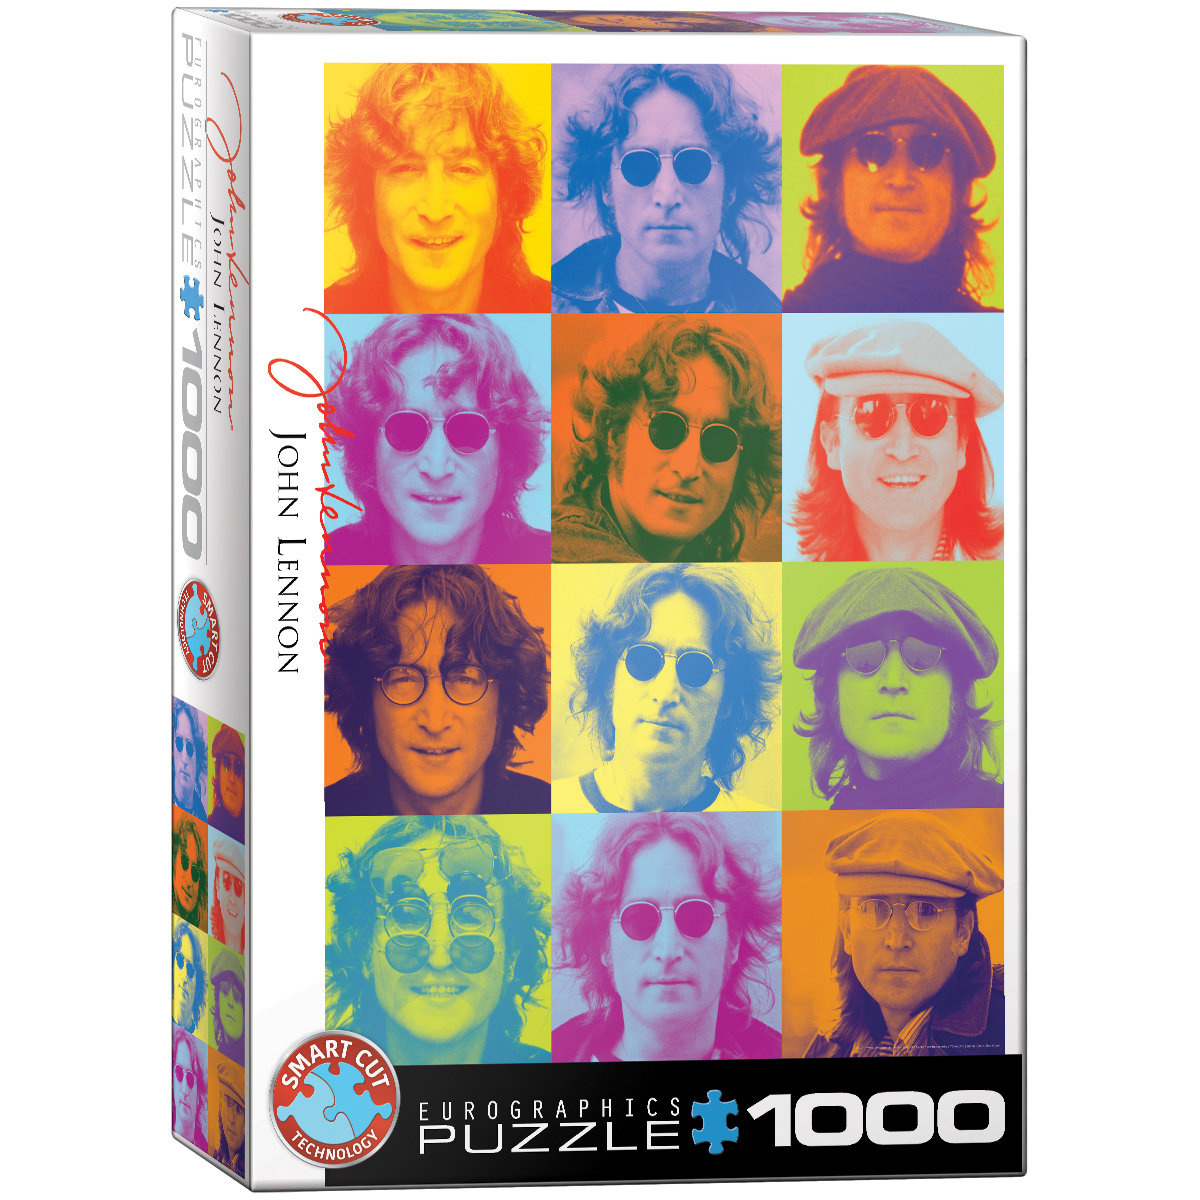 Eurographics Puzzle 1000 John Lennon Color Portraits 6000-0807 -